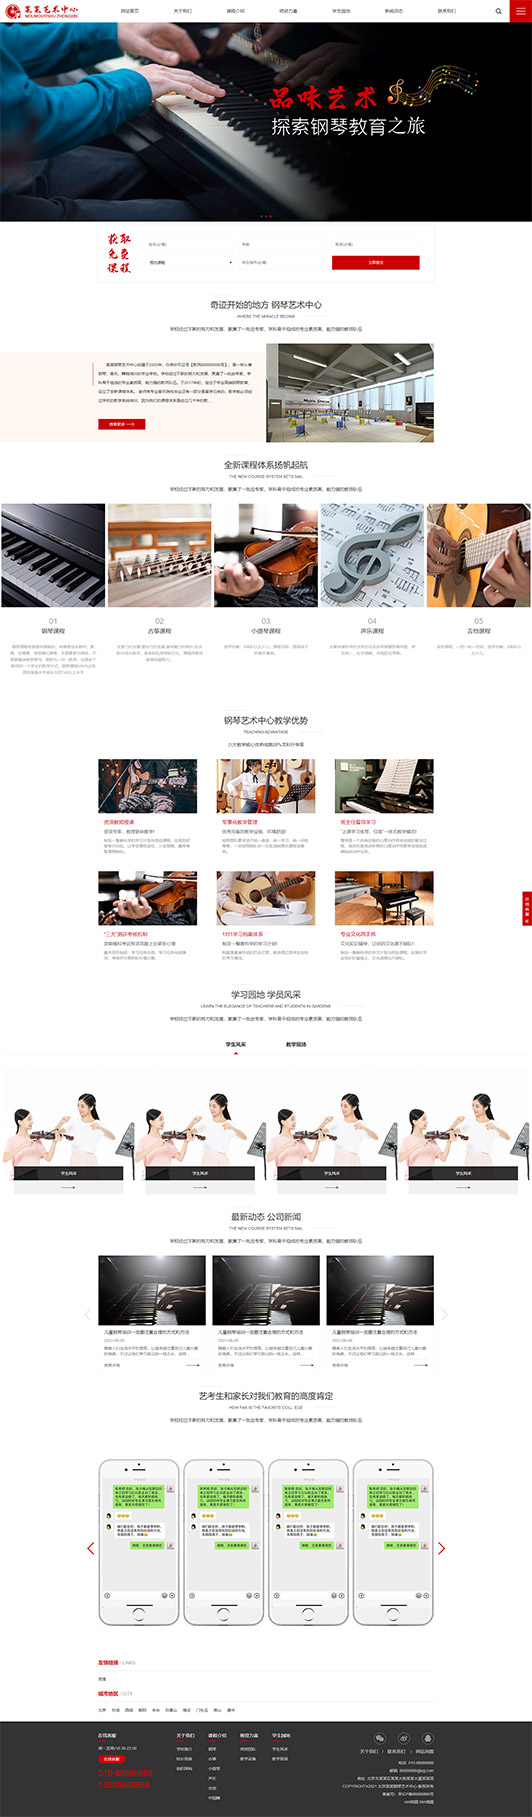 惠州钢琴艺术培训公司响应式企业网站